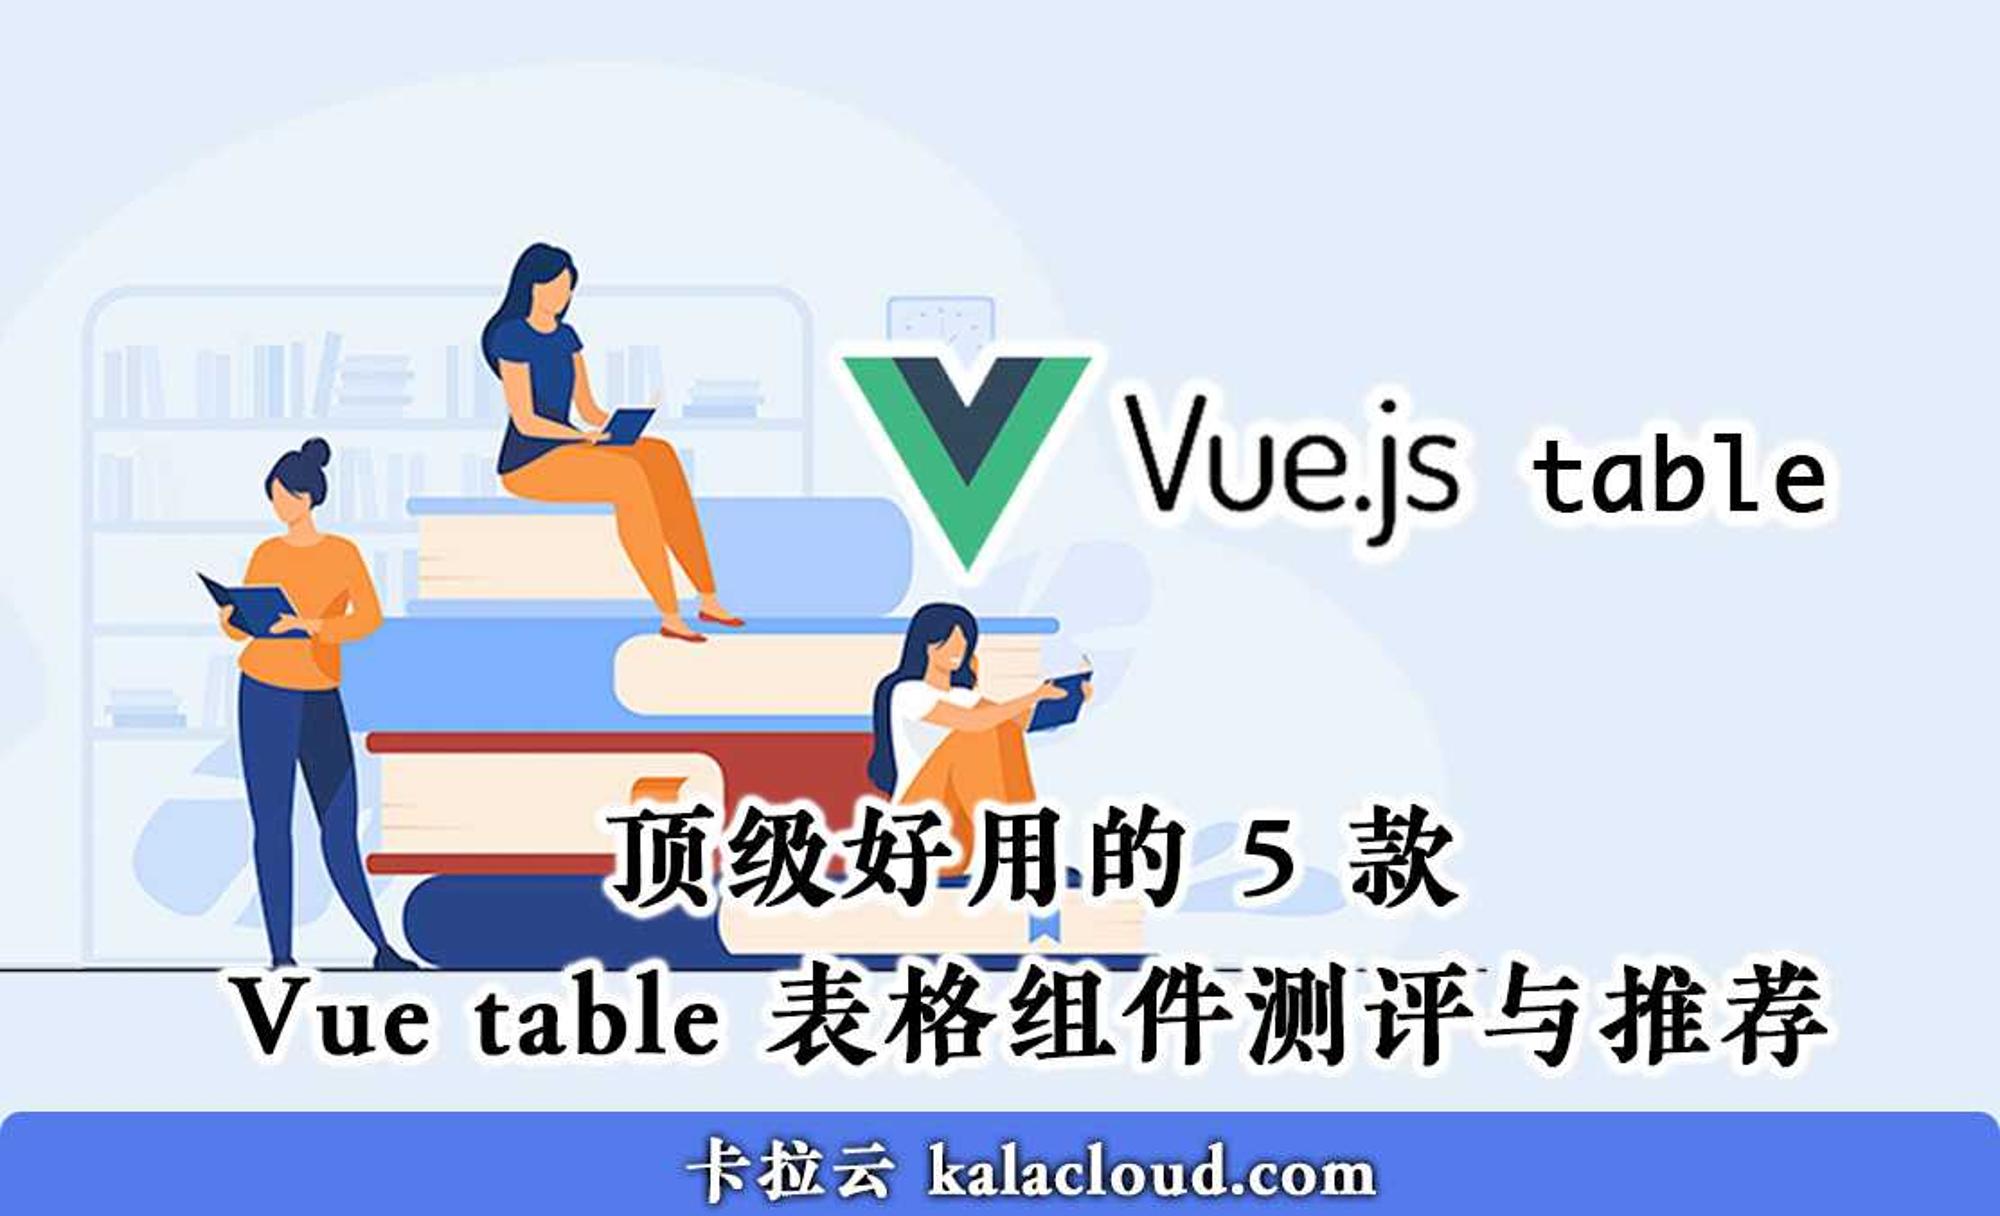 顶级好用的 5 款 Vue table 表格组件测评与推荐